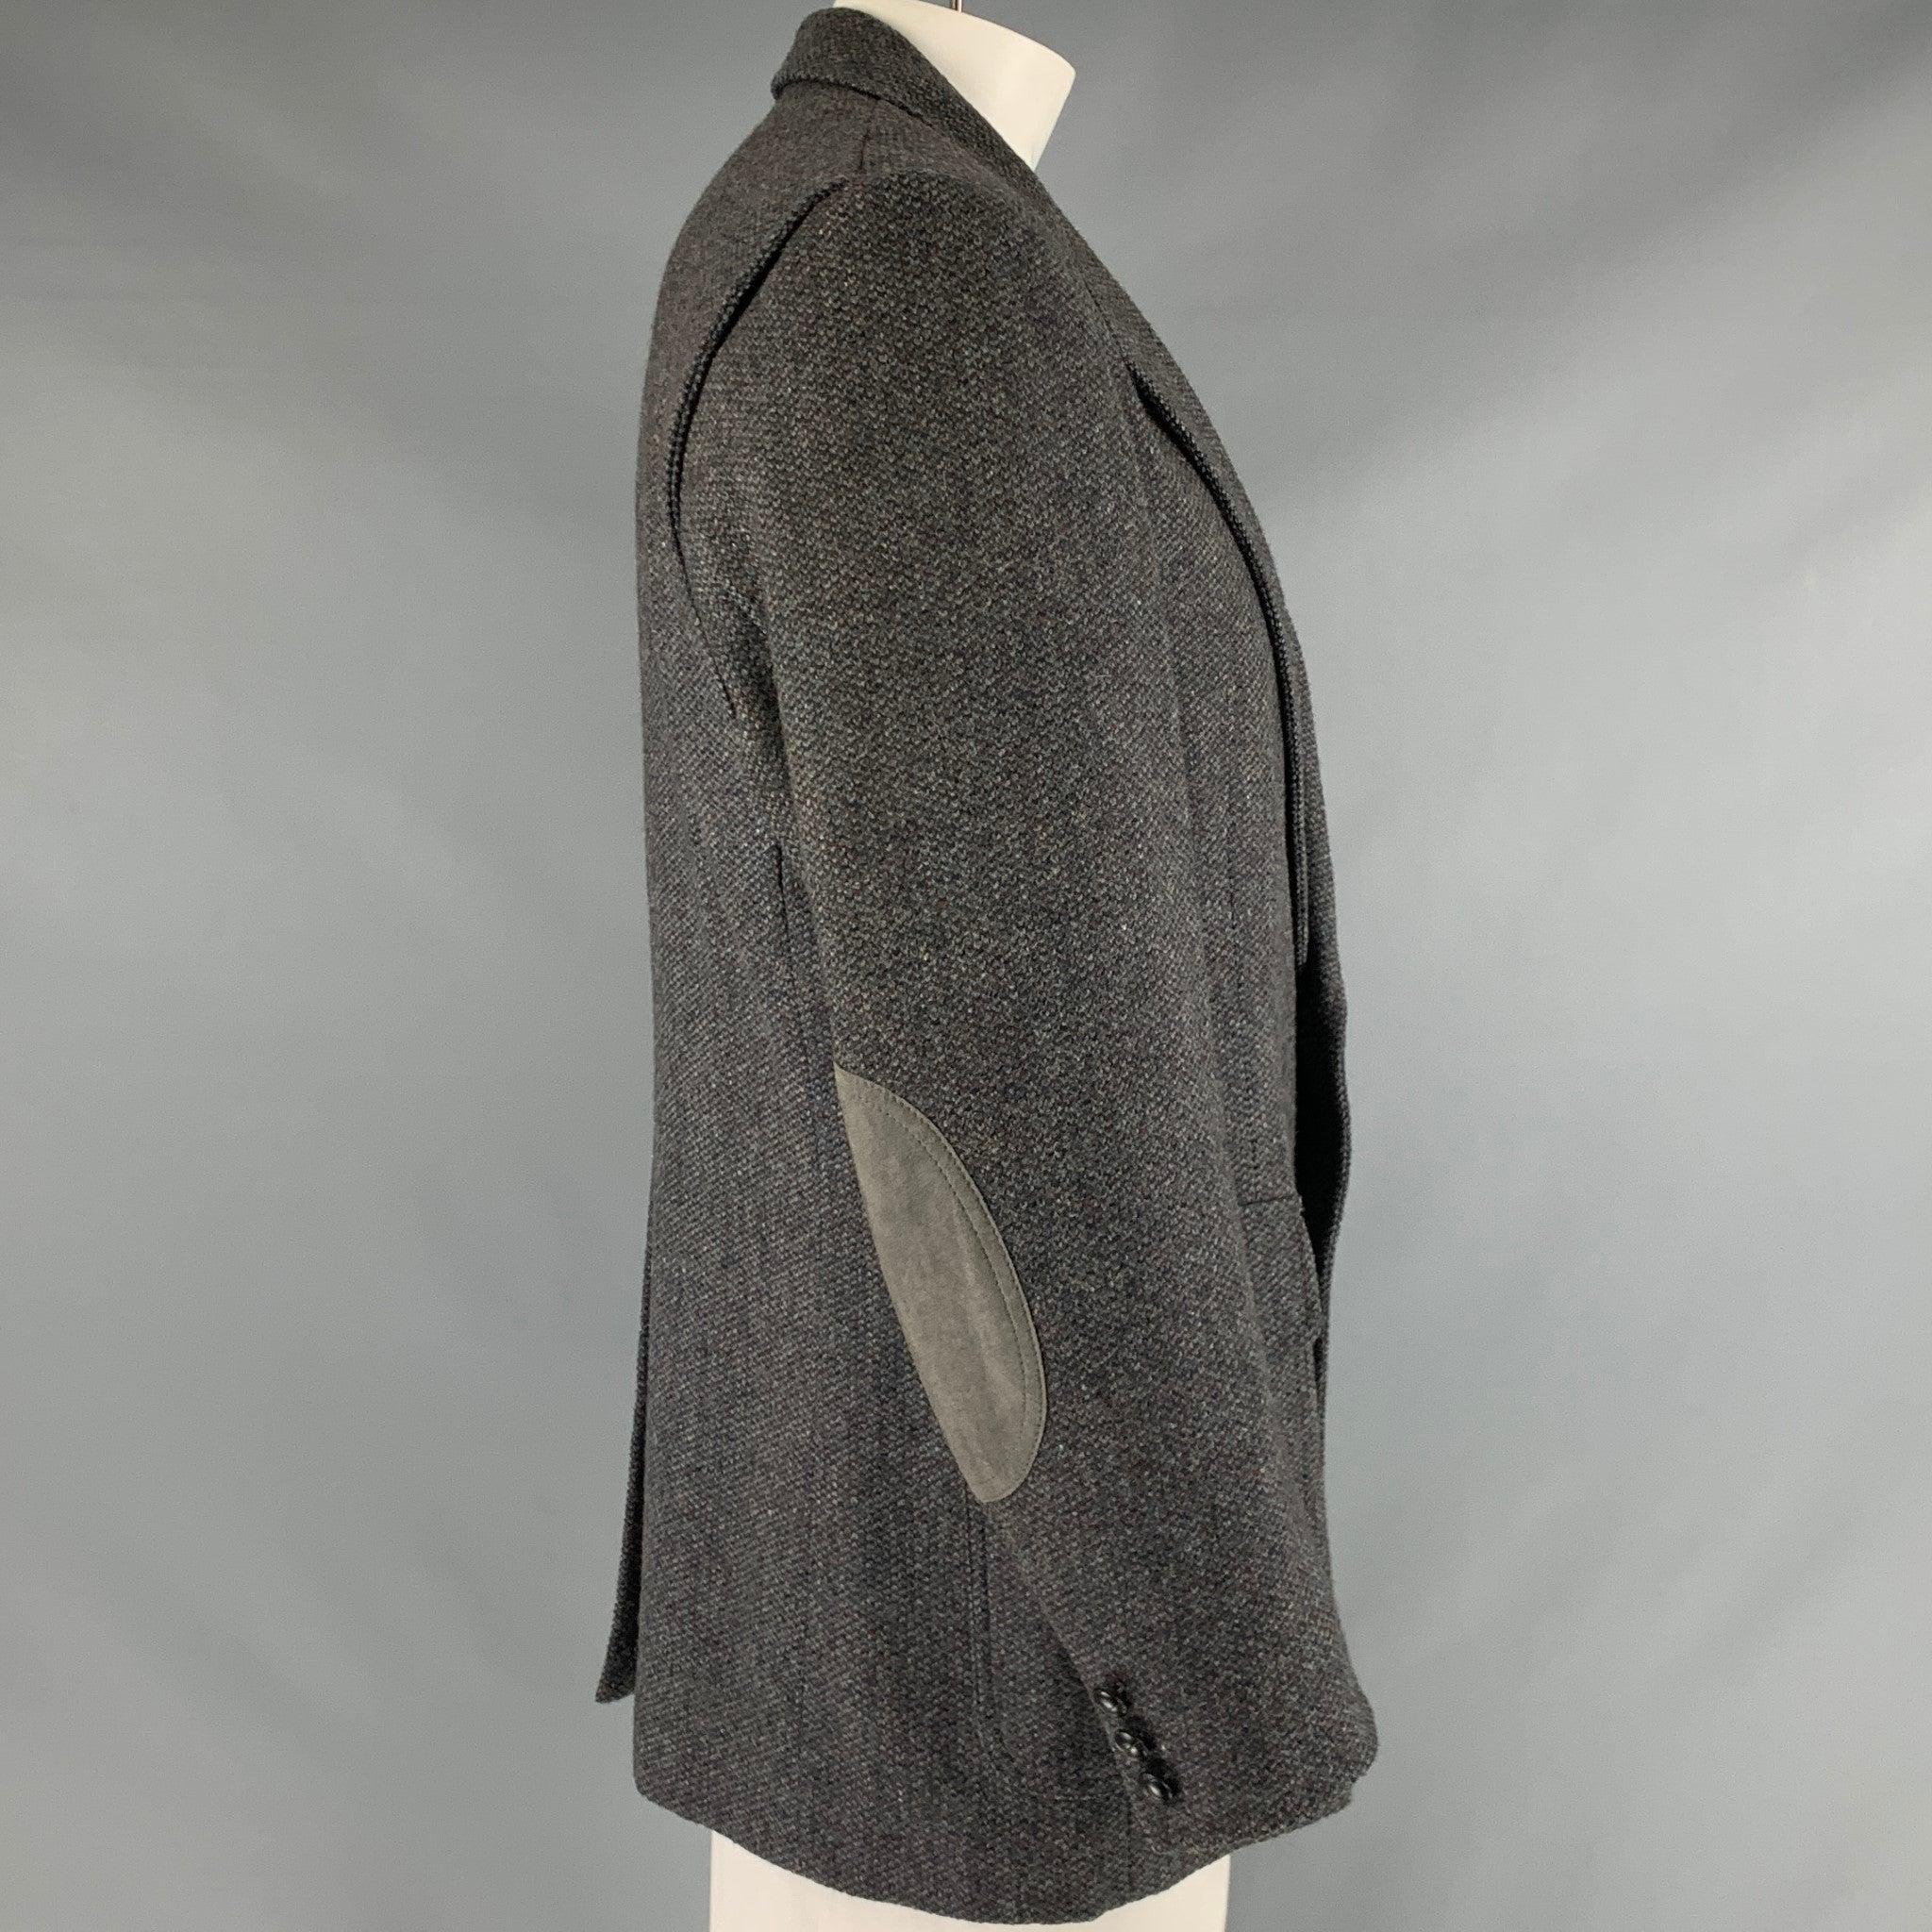 Manteau de sport Pendleton Vintage
en laine tweed bleue, avec un revers à cran, trois poches, des empiècements aux coudes et une fermeture à deux boutons. Fabriqué aux Etats-Unis. Très bon état. 

Marqué :   44 

Mesures : 
 
Épaule : 19 pouces